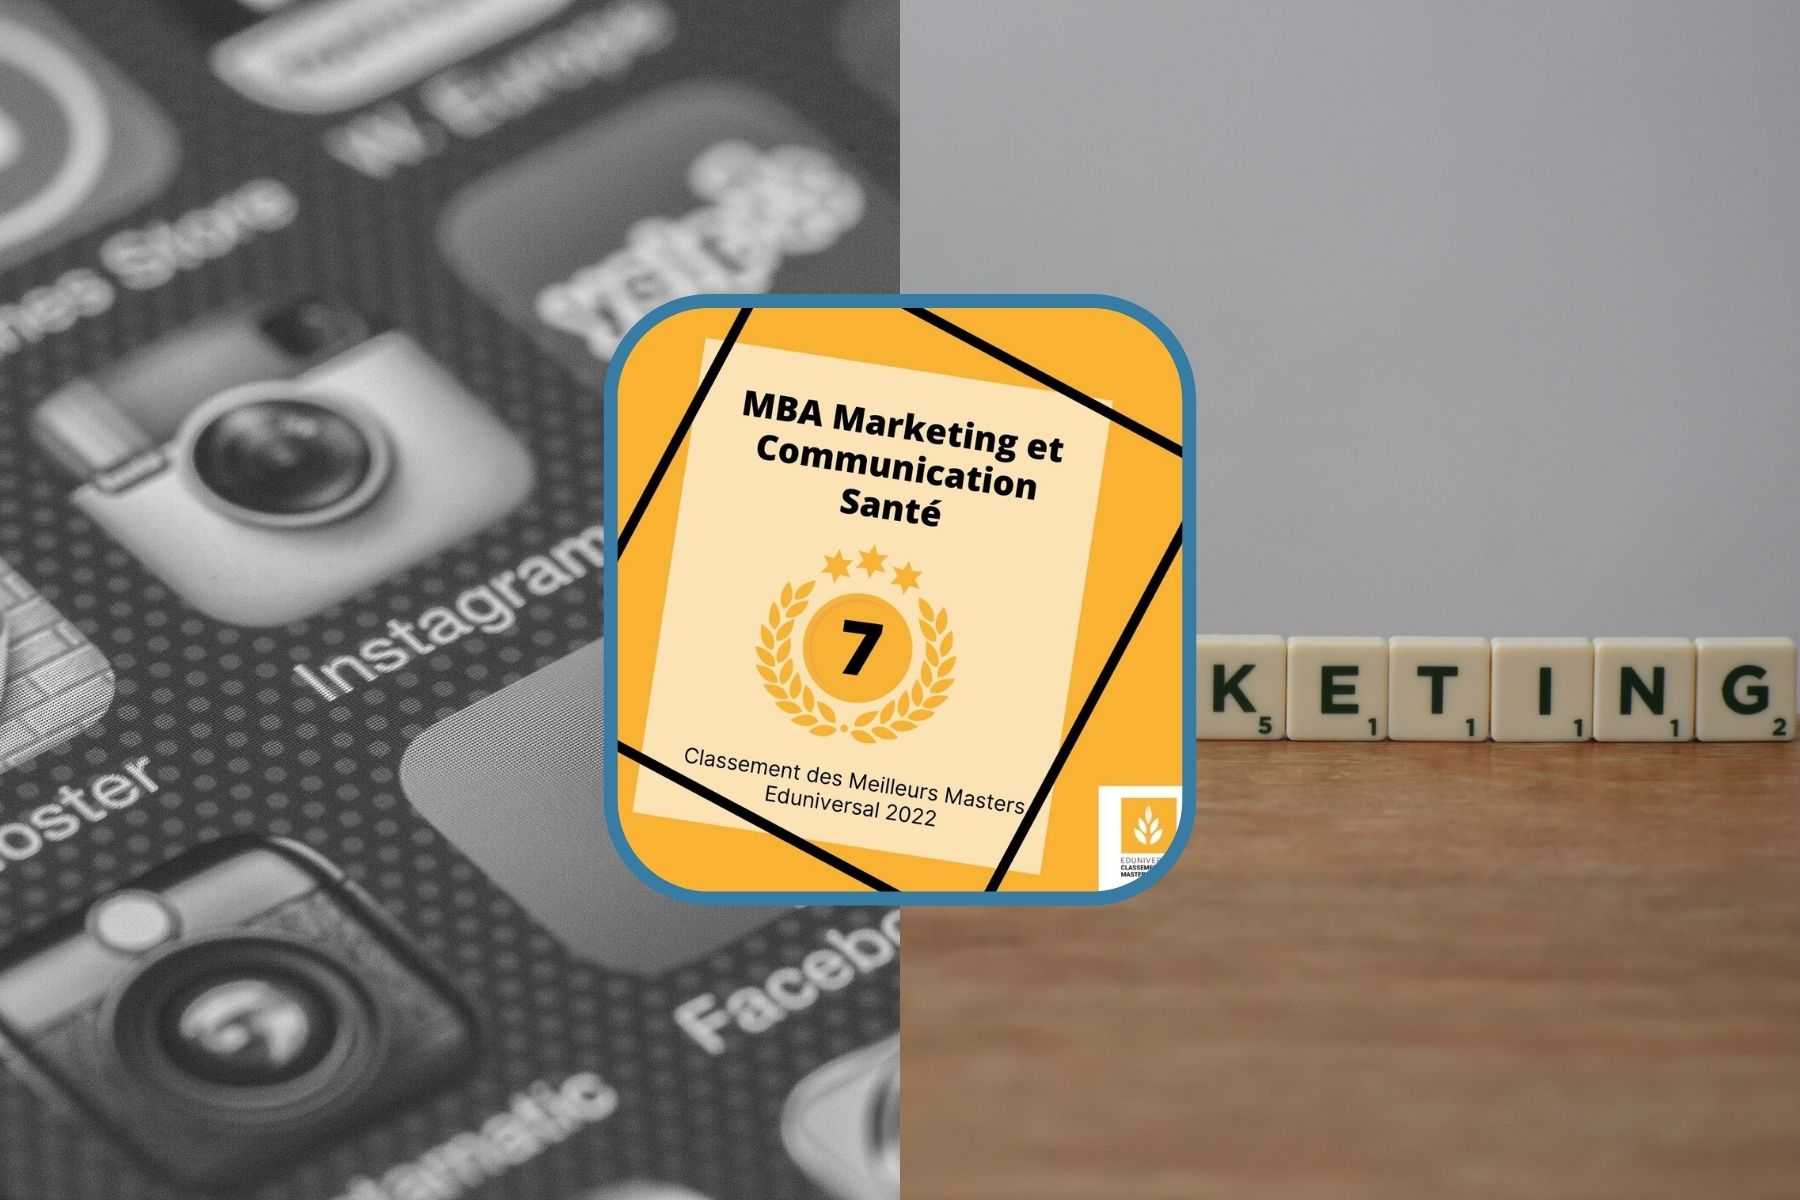 Article MBA Marketing et Communication Santé : 7ème Meilleur Master 2022